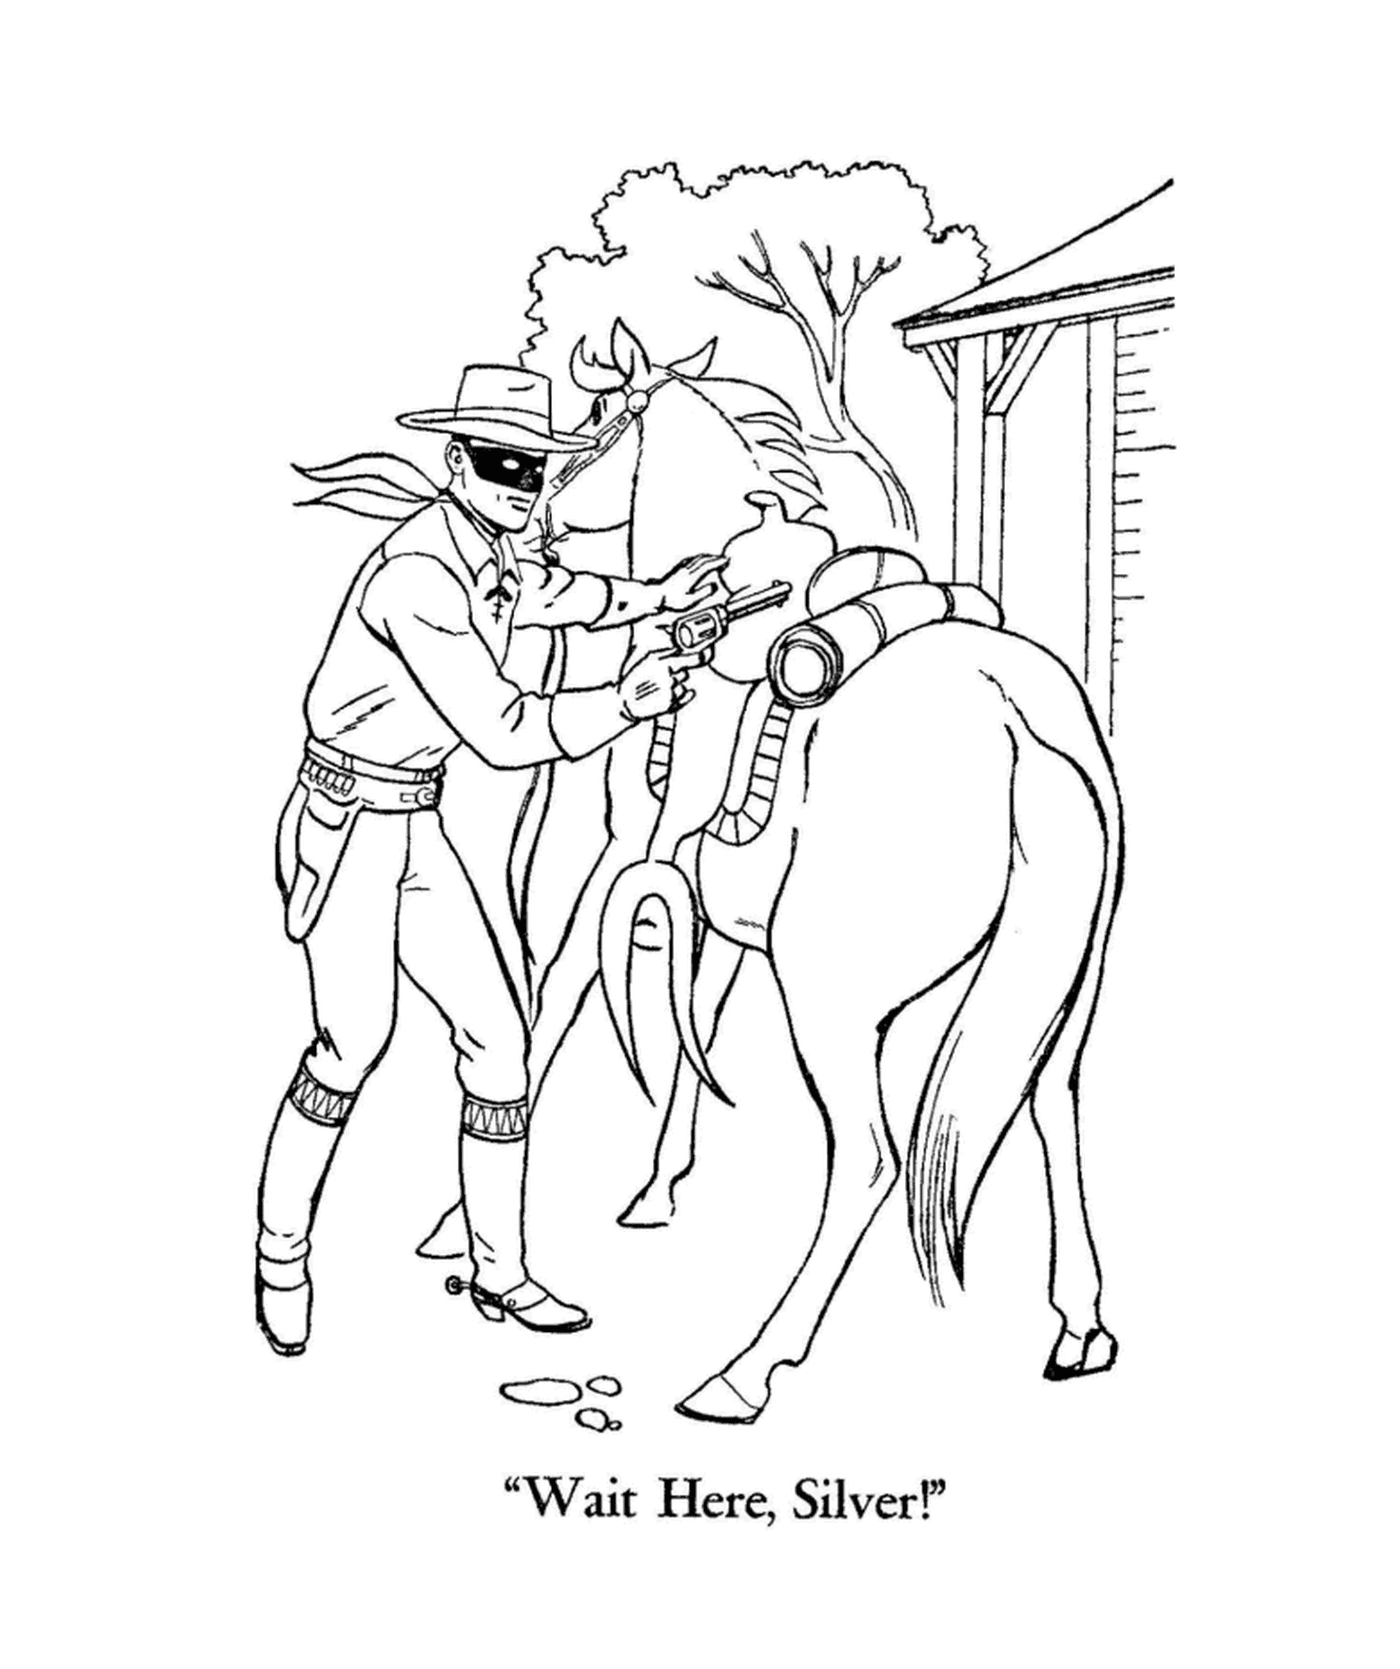  Zorro com um rifle e seu cavalo 